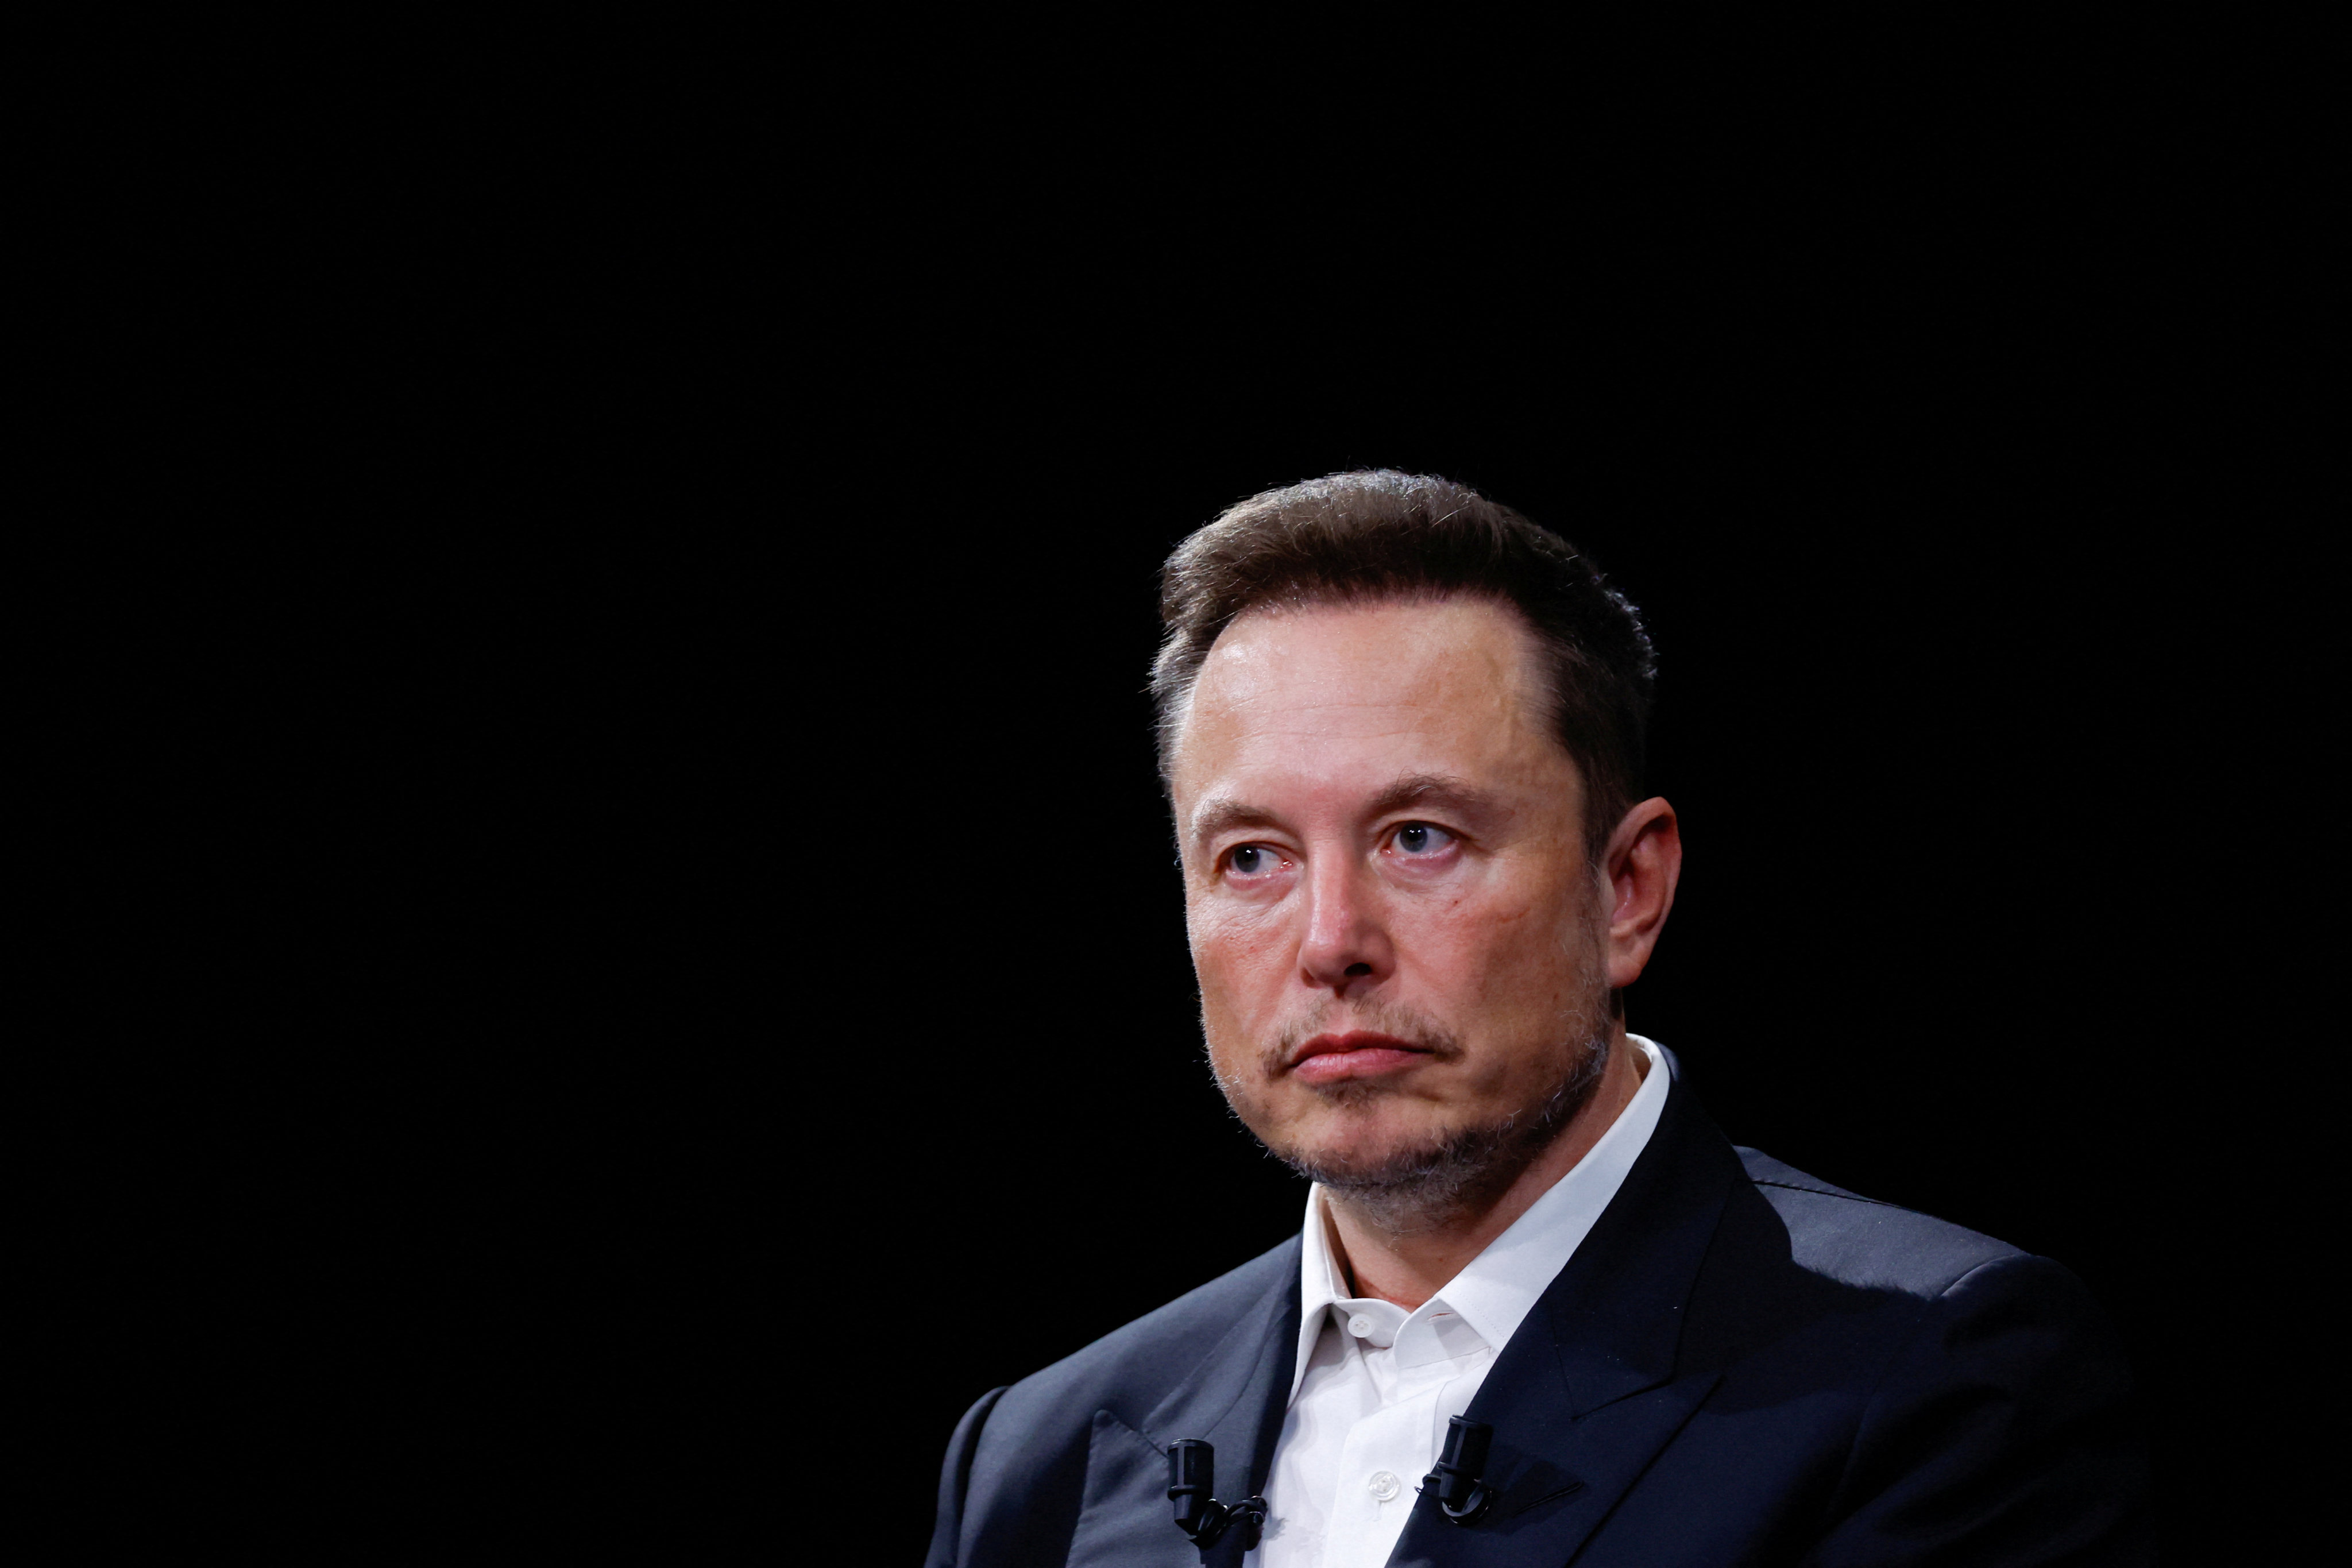 Elon Musk has described himself as a free speech absolutist. Photo: Reuters